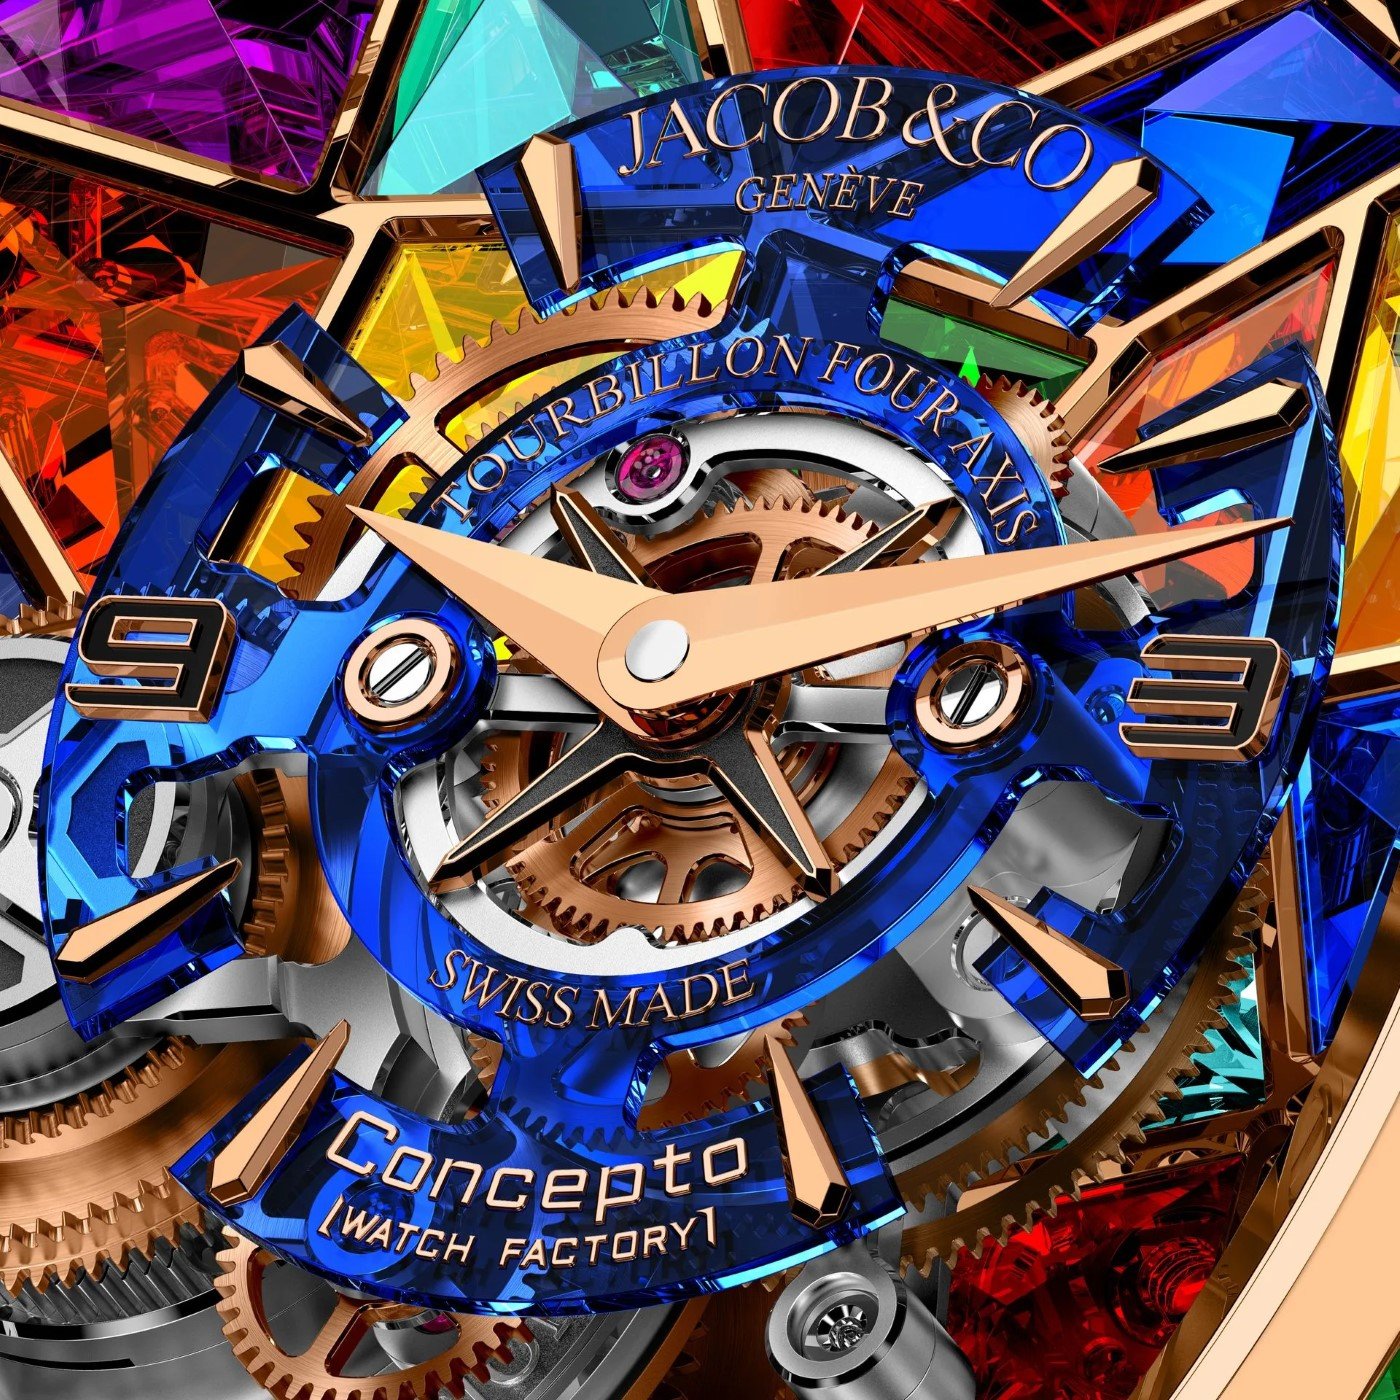 Astronomia Revolution 4th Dimension For Only Watch 2023, un testament d'innovation par Jacob & Co. et Concepto Watch Factory